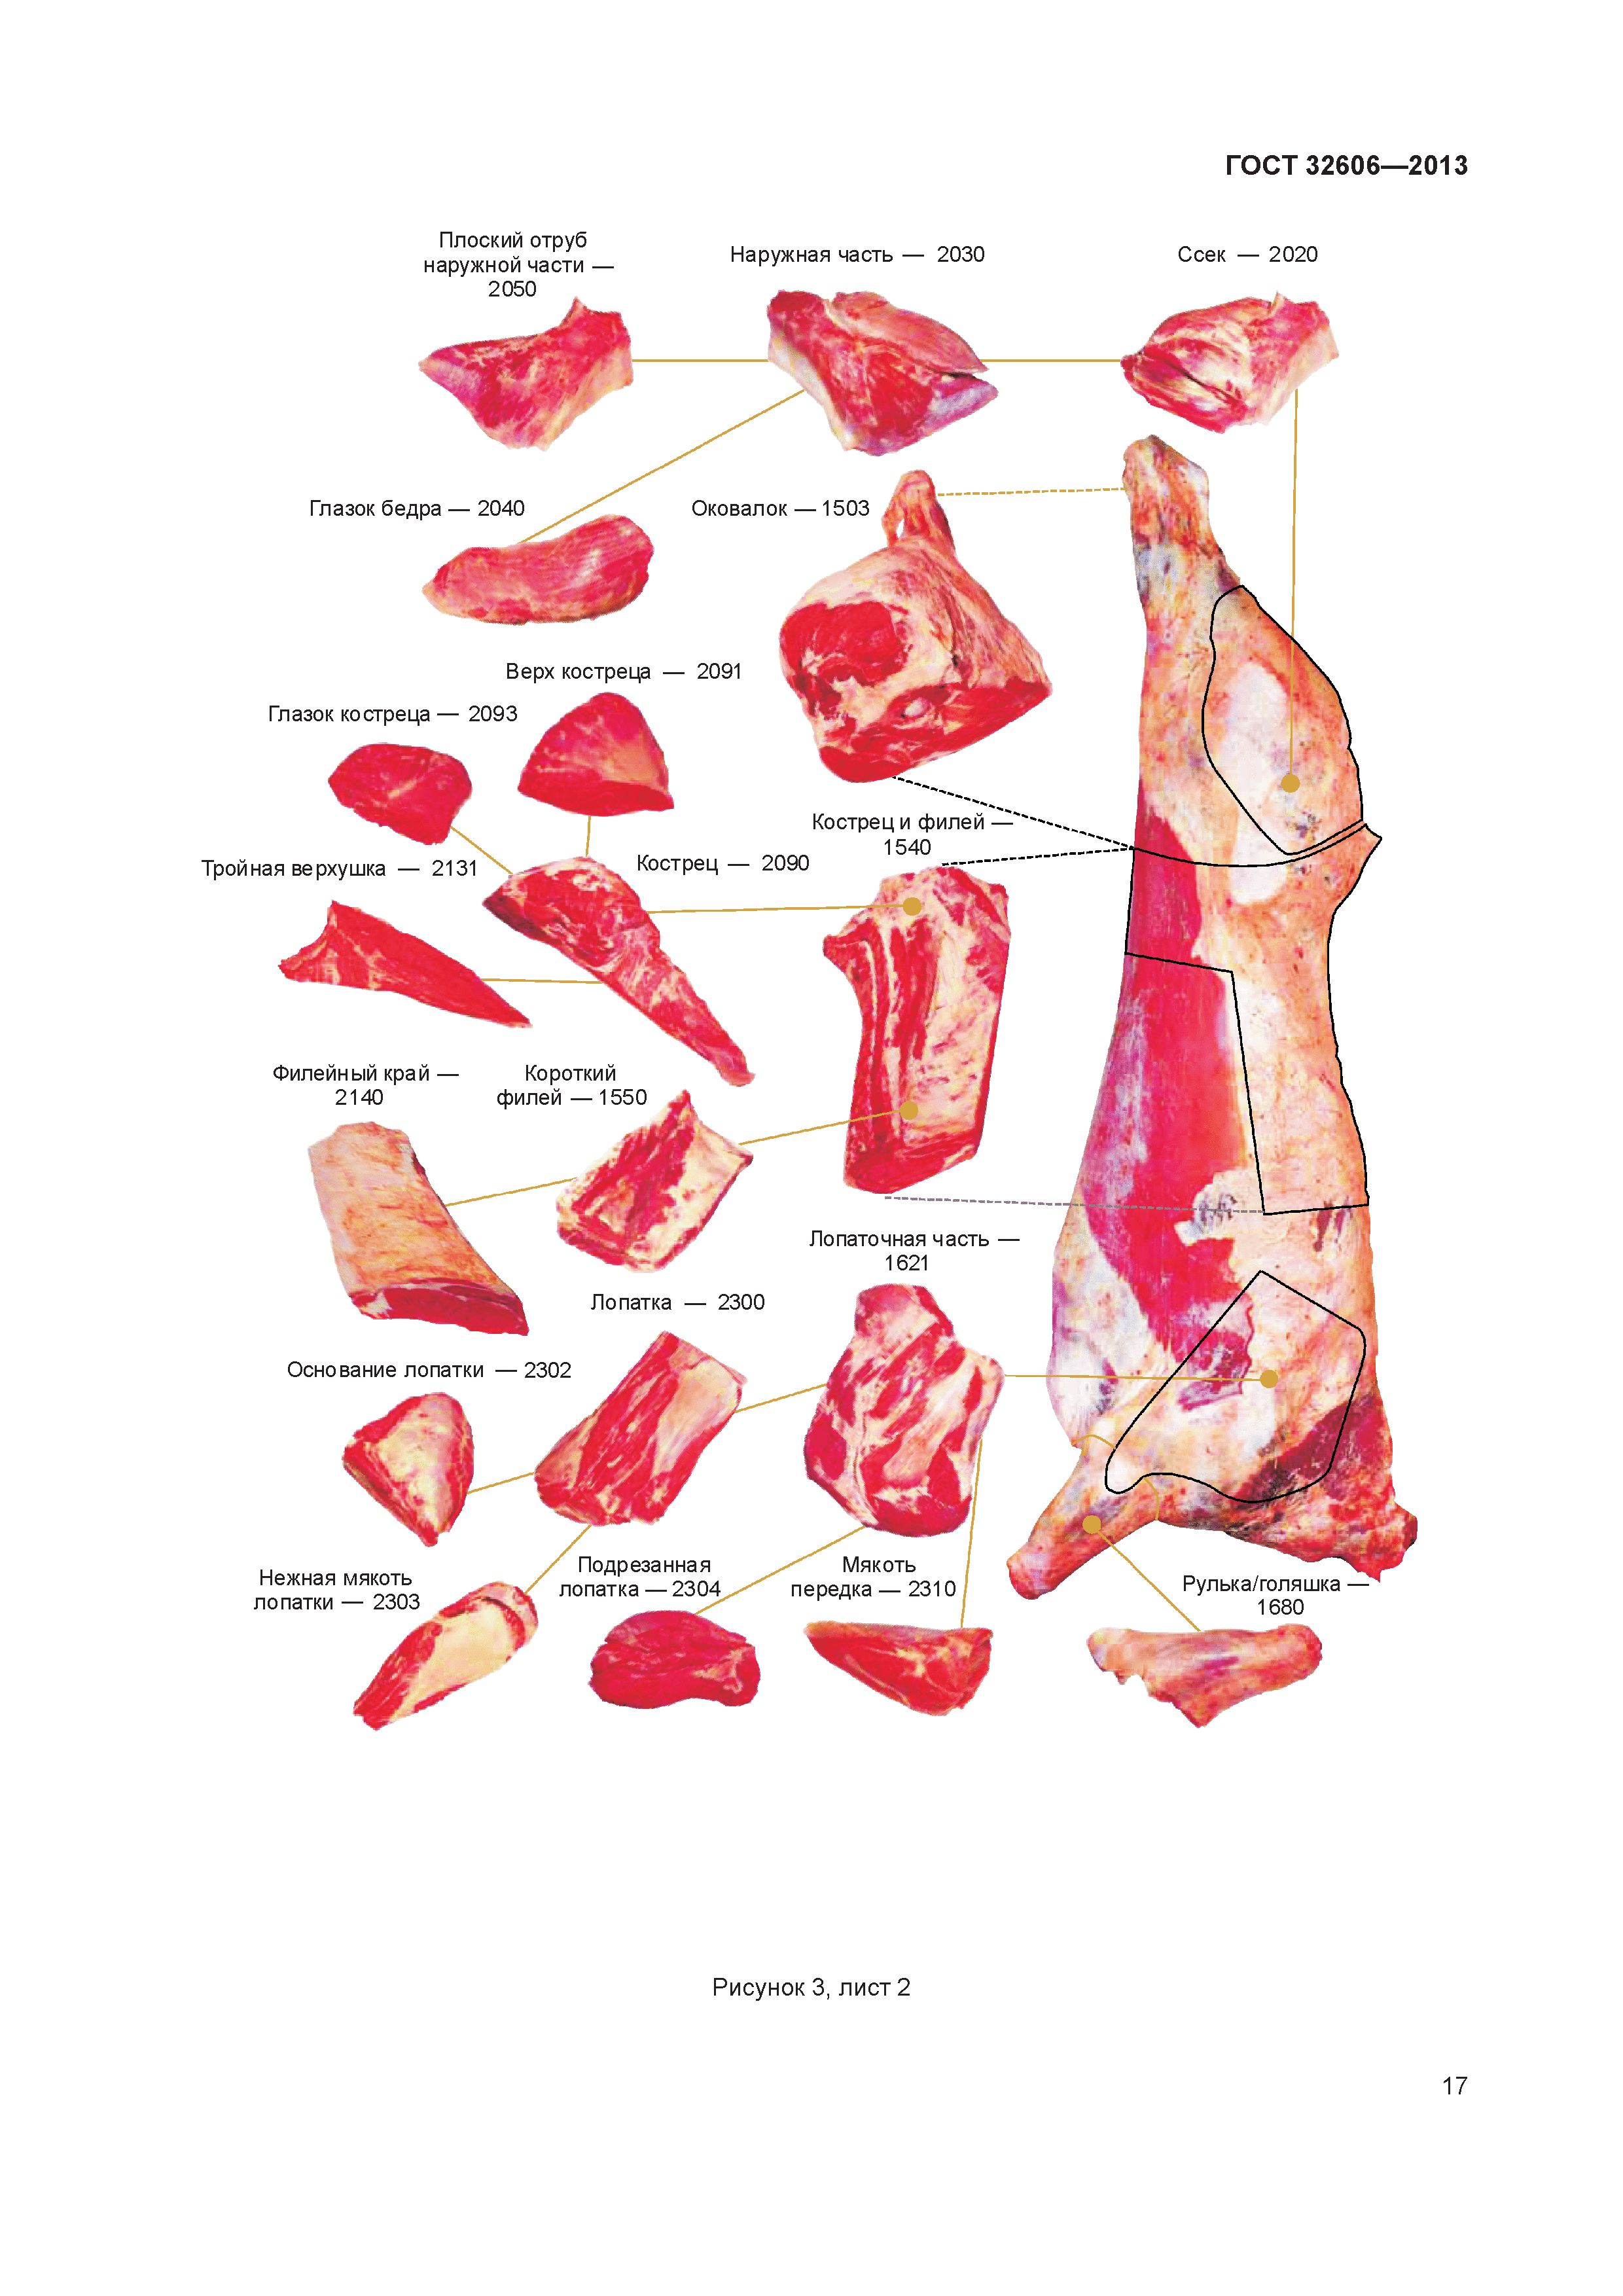 Нежирная часть говядины